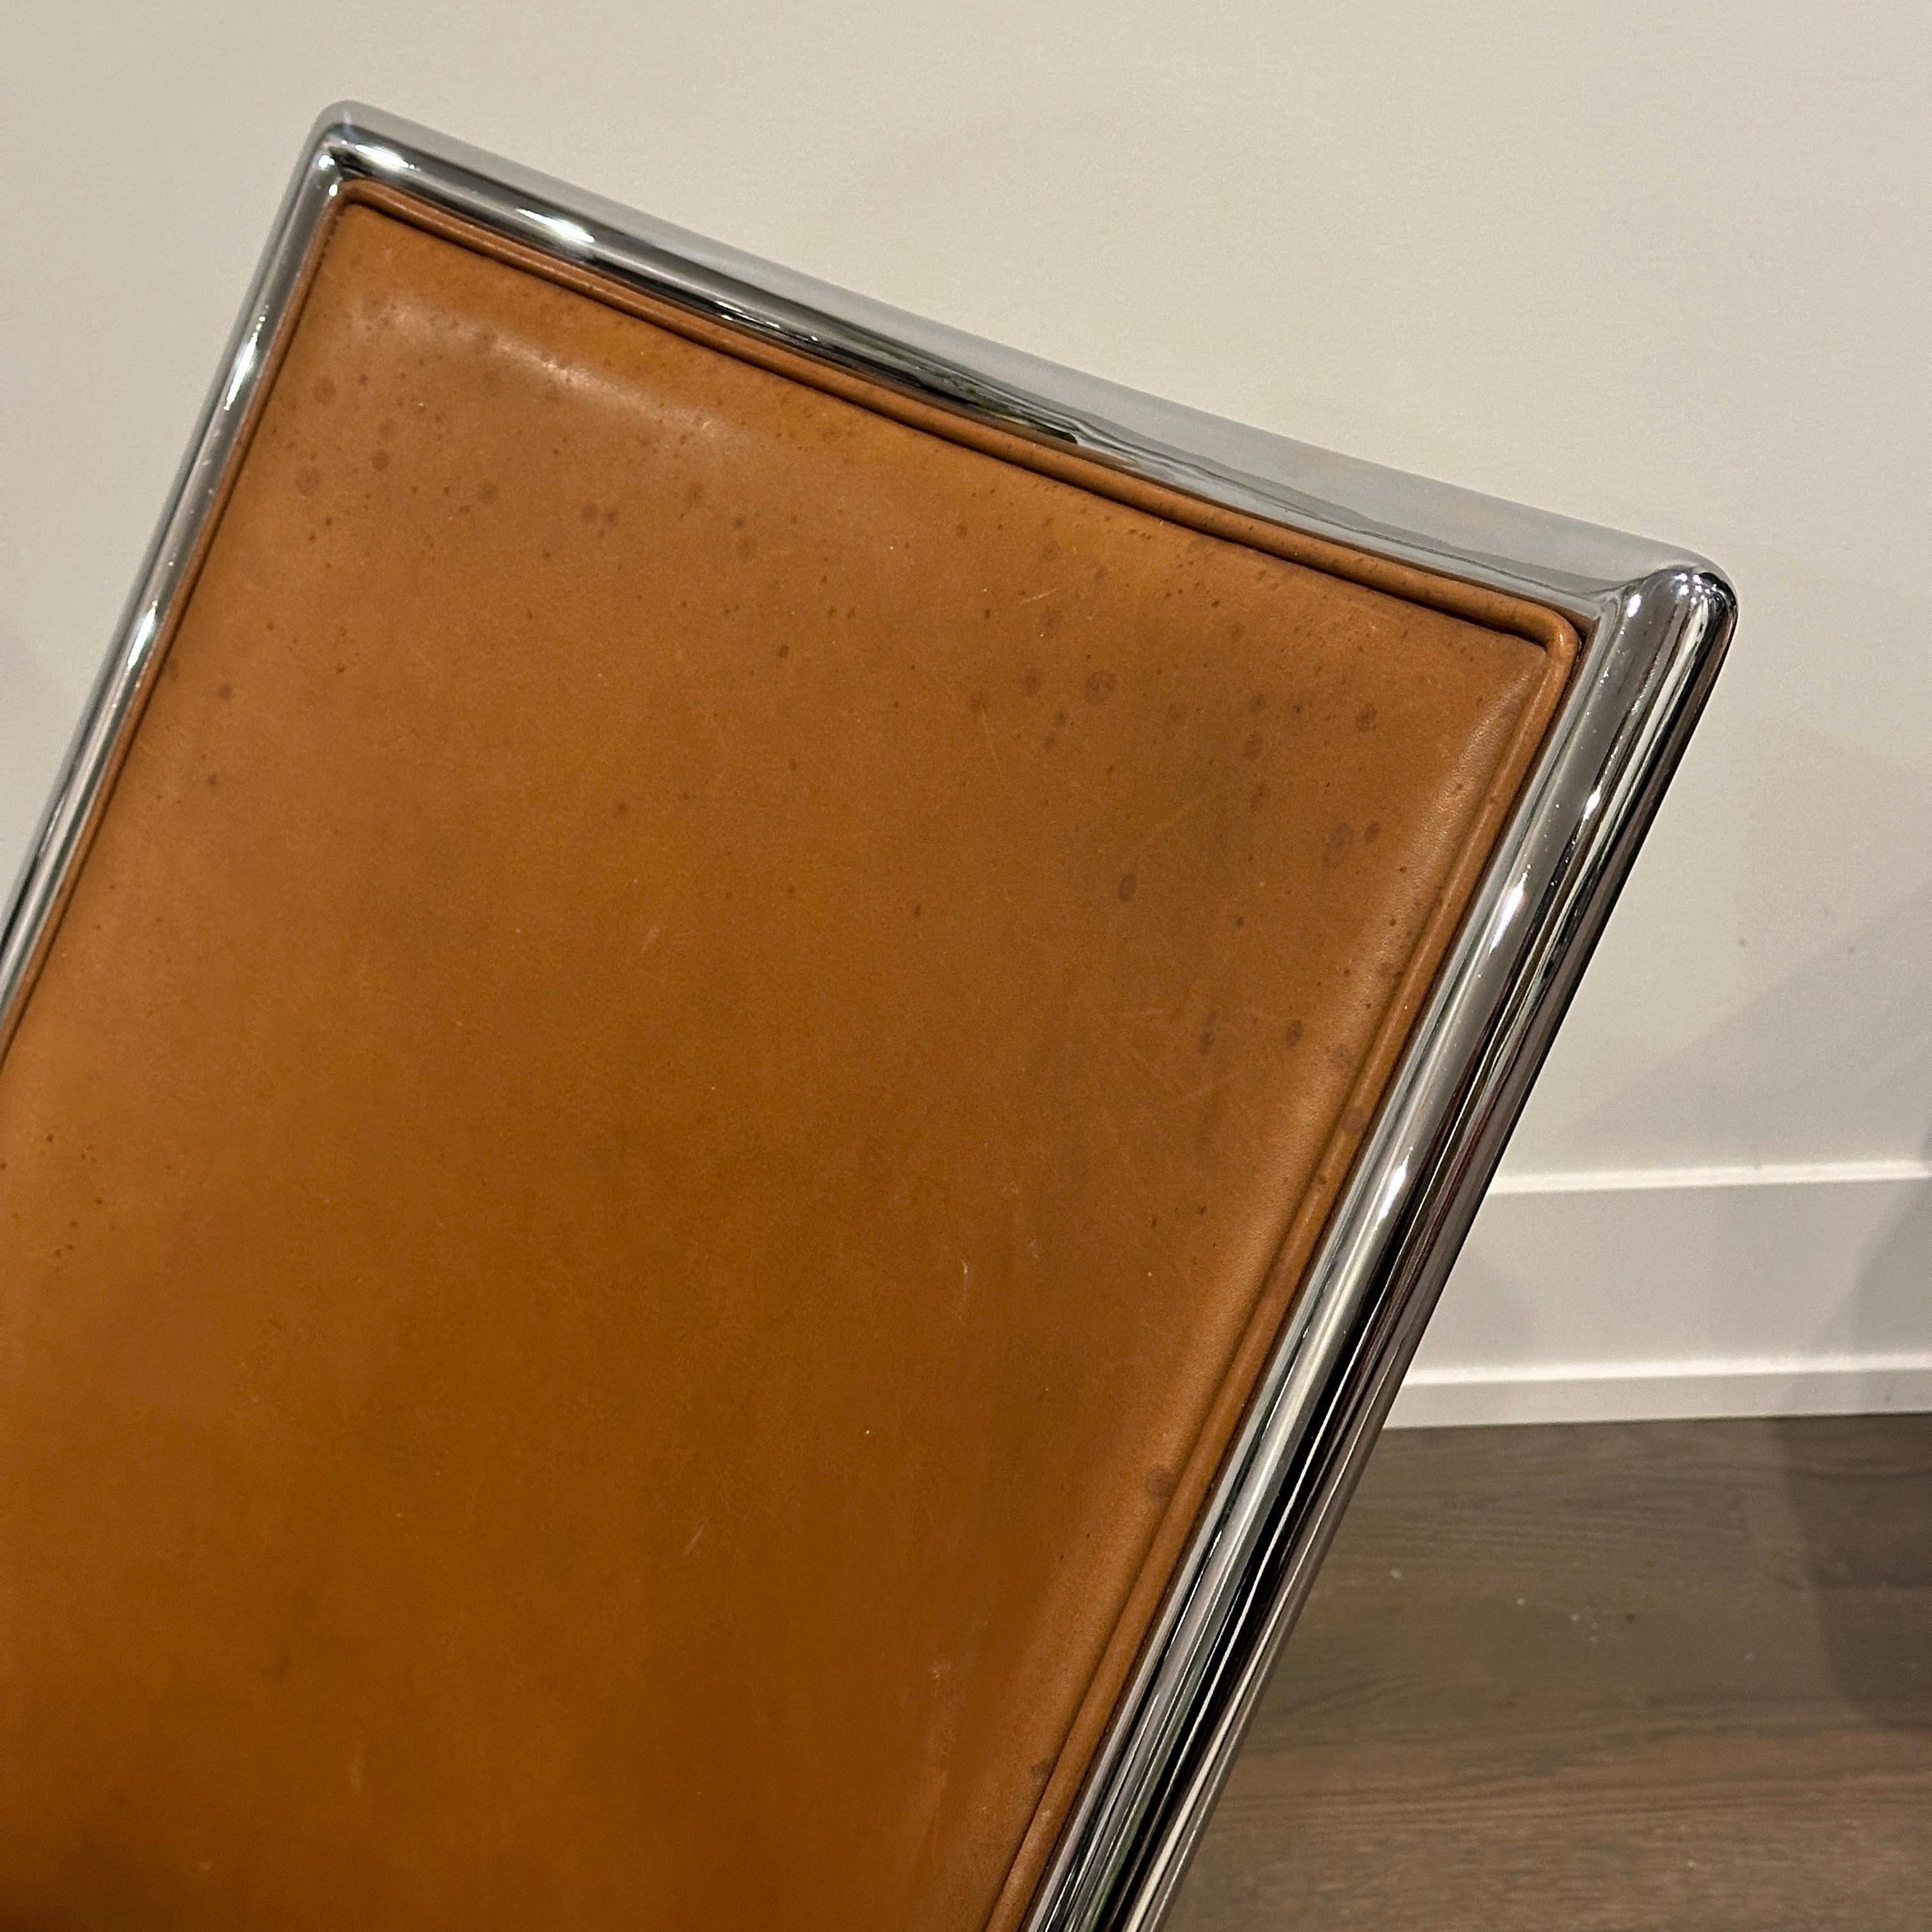 Silla de tijera con estructura cromada del diseñador Ward Bennett, en cuero marrón, la pieza está marcada.

